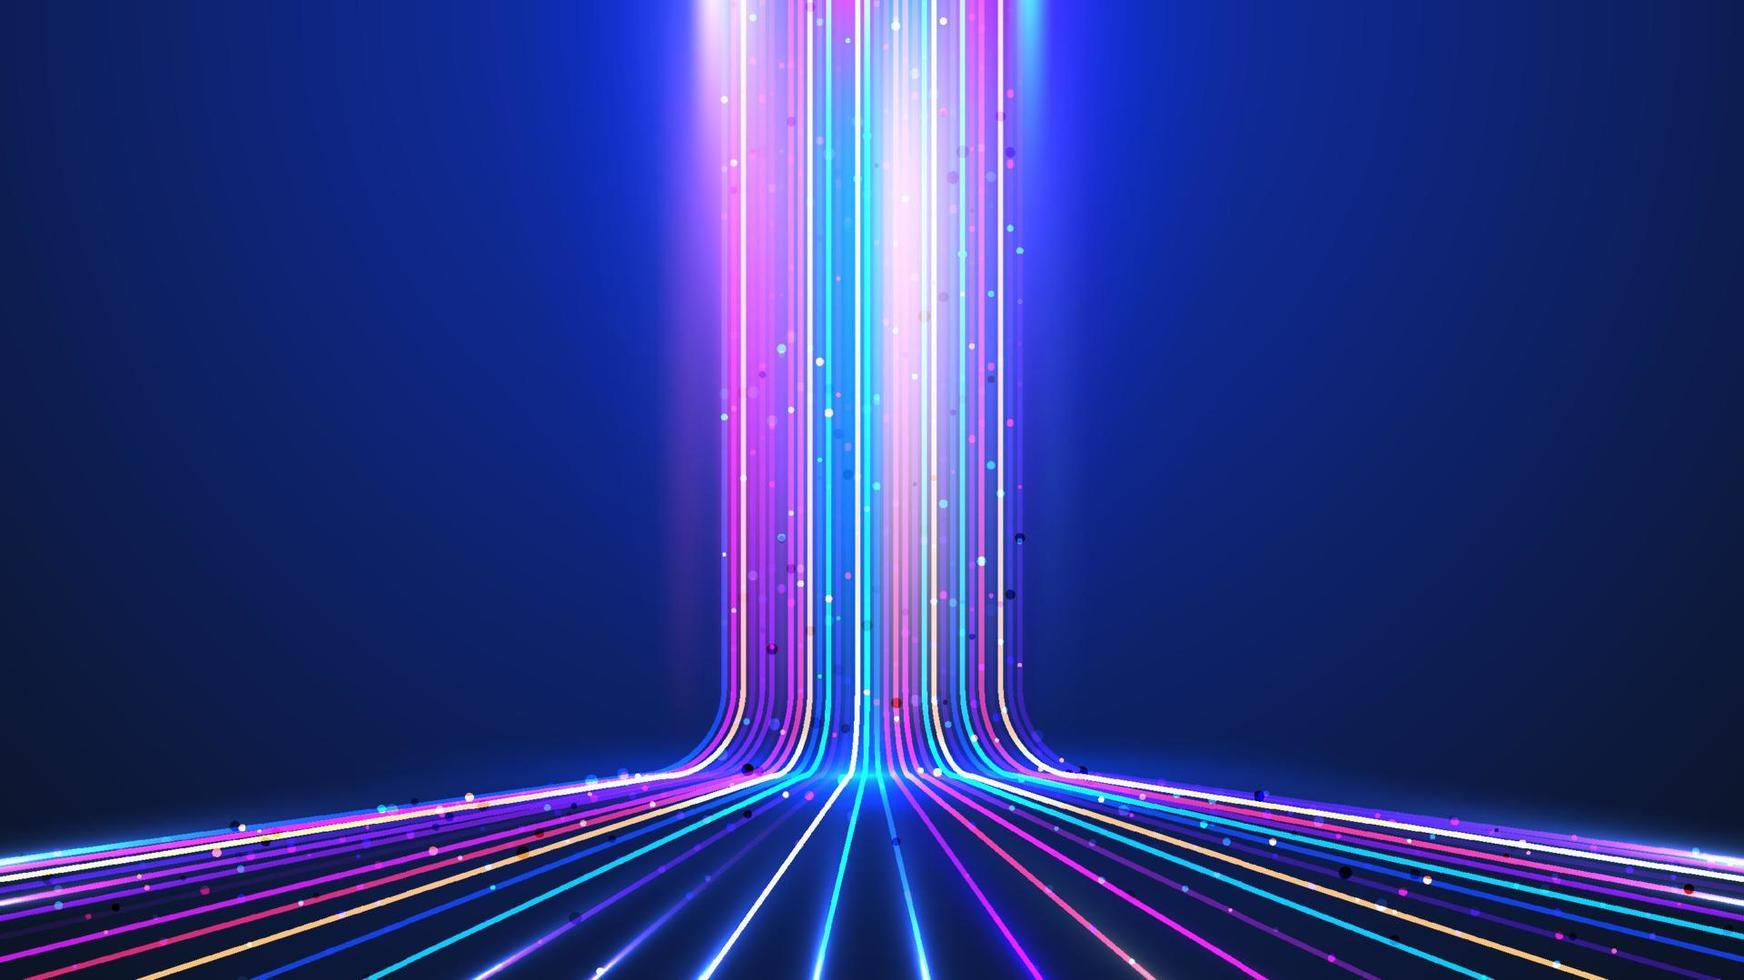 technologie abstraite concept futuriste numérique lueur lignes de couleurs néon avec perspective d'effet d'éclairage sur fond bleu foncé vecteur